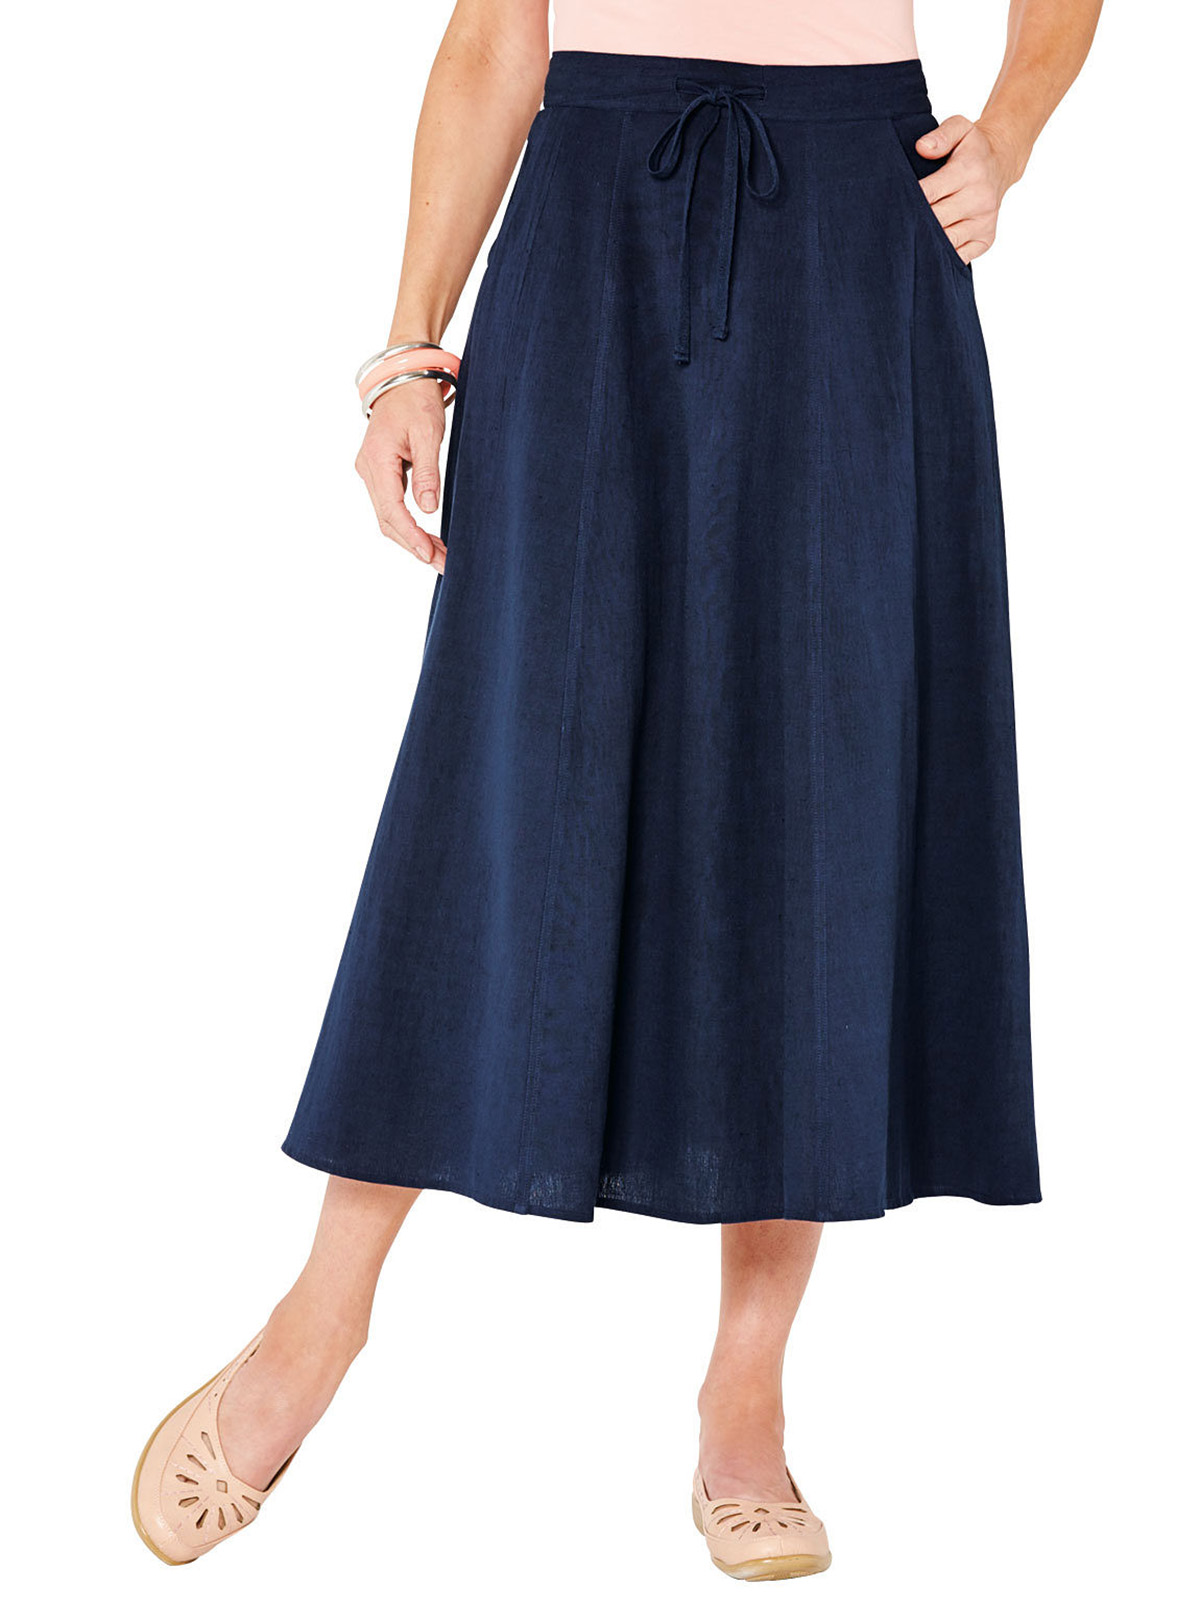 Amber - - Amber NAVY Linen Blend Midi Skirt - Plus Size 18